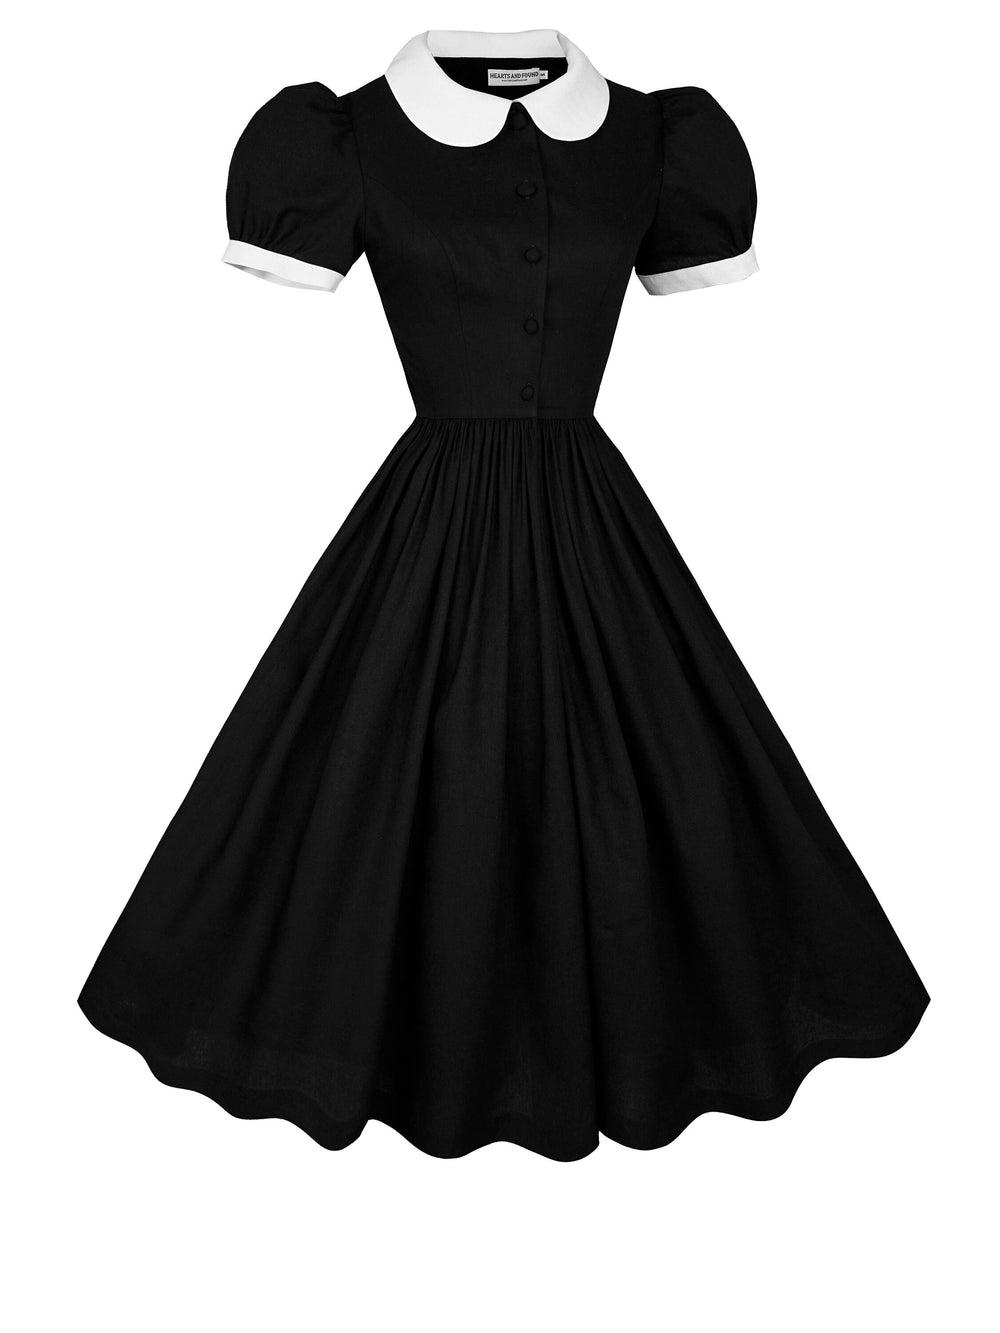 MTO - Amelie Dress in Midnight Black Linen + White Trim